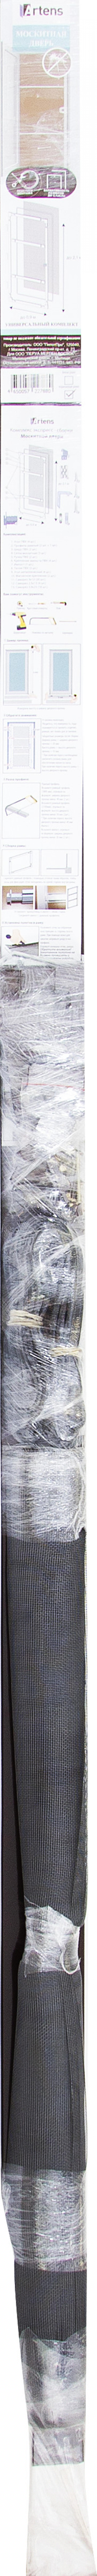 Жақтаулық москит торы Artens есікке арналған 210х90 см қоңыр (құрастыруға арналған жиынтық)